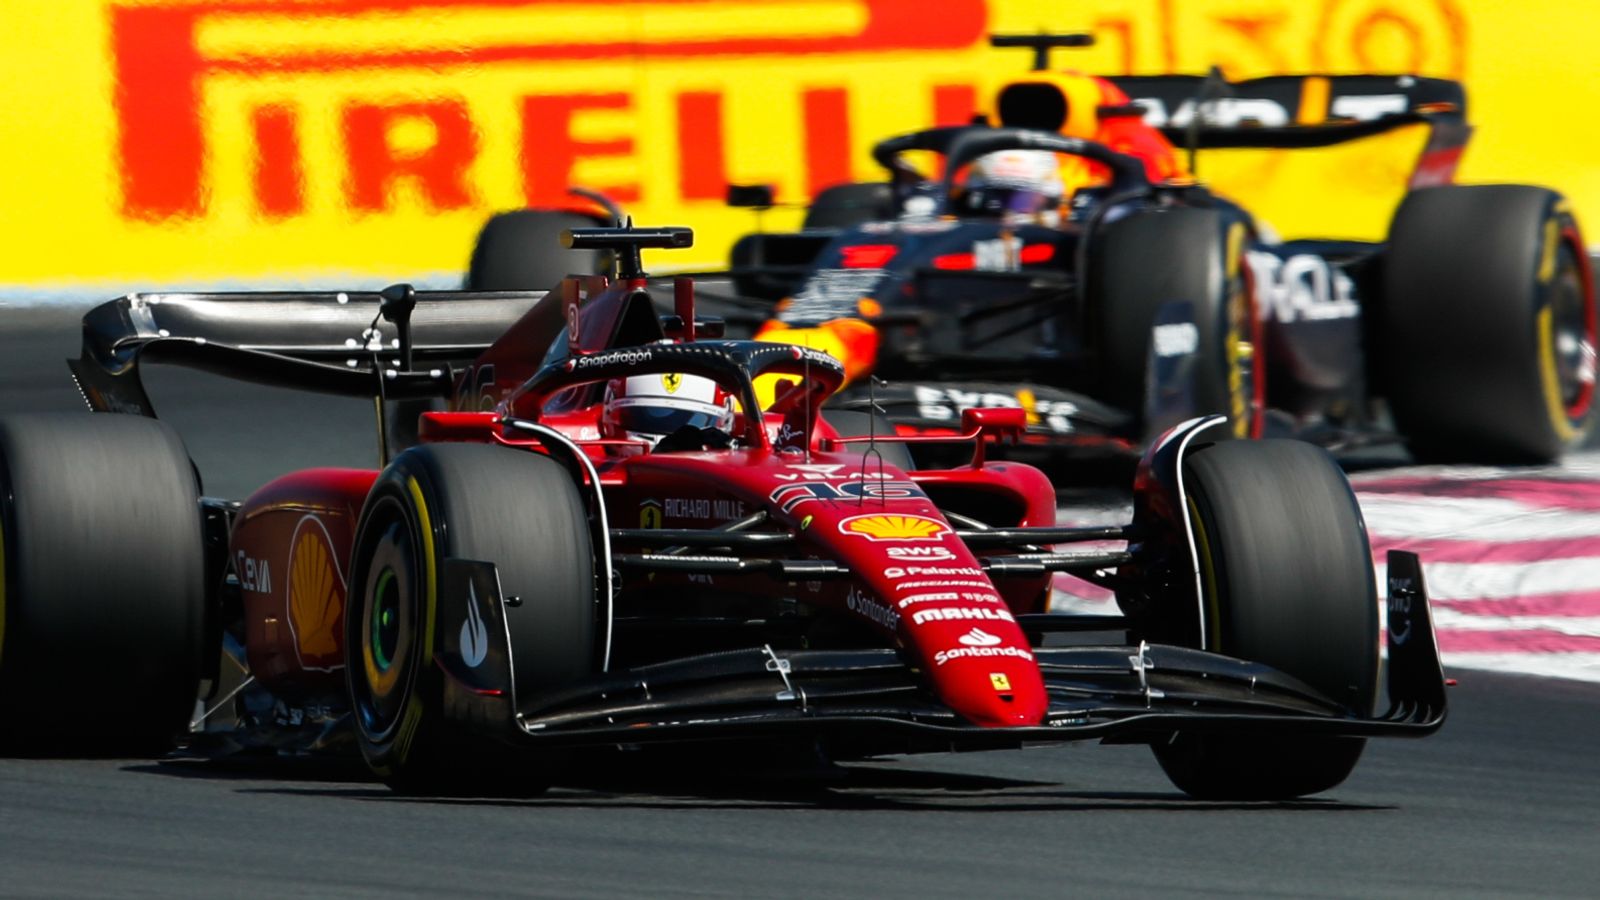 Direktur balapan Laurent Meekes mengatakan Ferrari tidak senang dengan penalti batas biaya yang ‘sangat tidak signifikan’ dari Red Bull